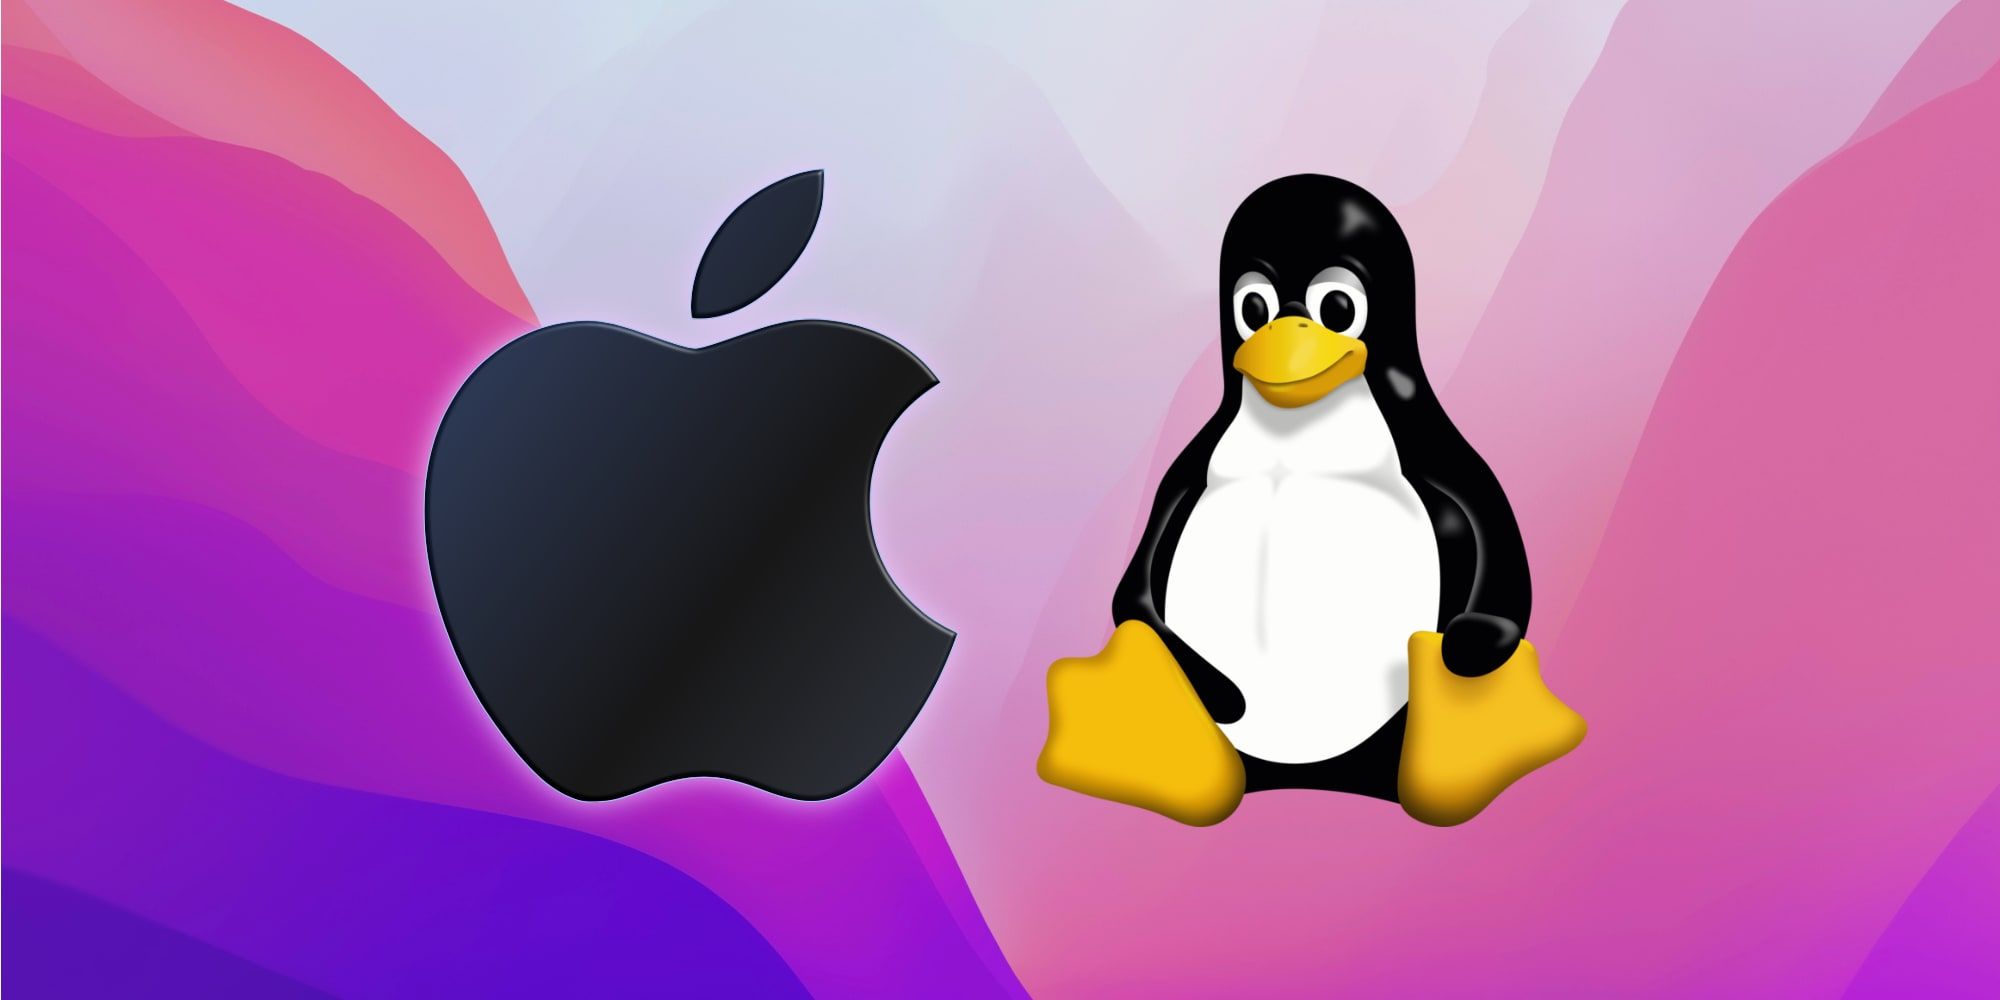 Apple Logo Linux Penguin Tux